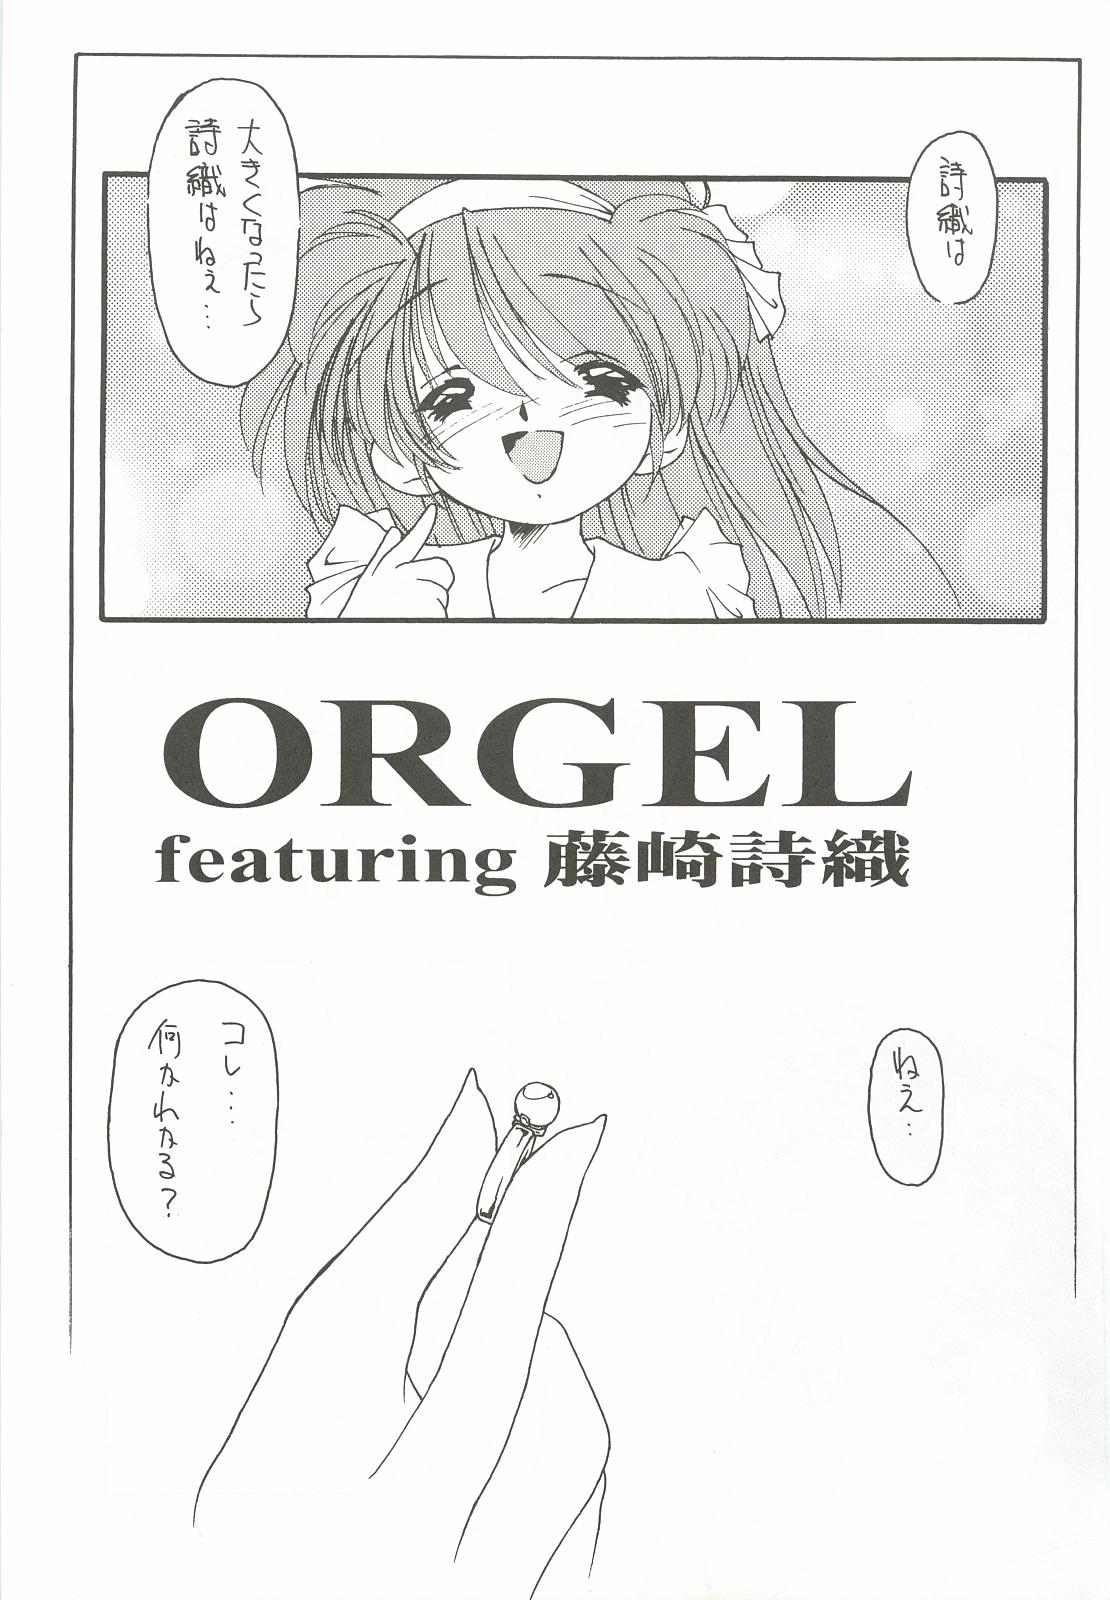 18 Year Old ORGEL 2 featuring Fujisaki Shiori - Tokimeki memorial Big Ass - Page 8